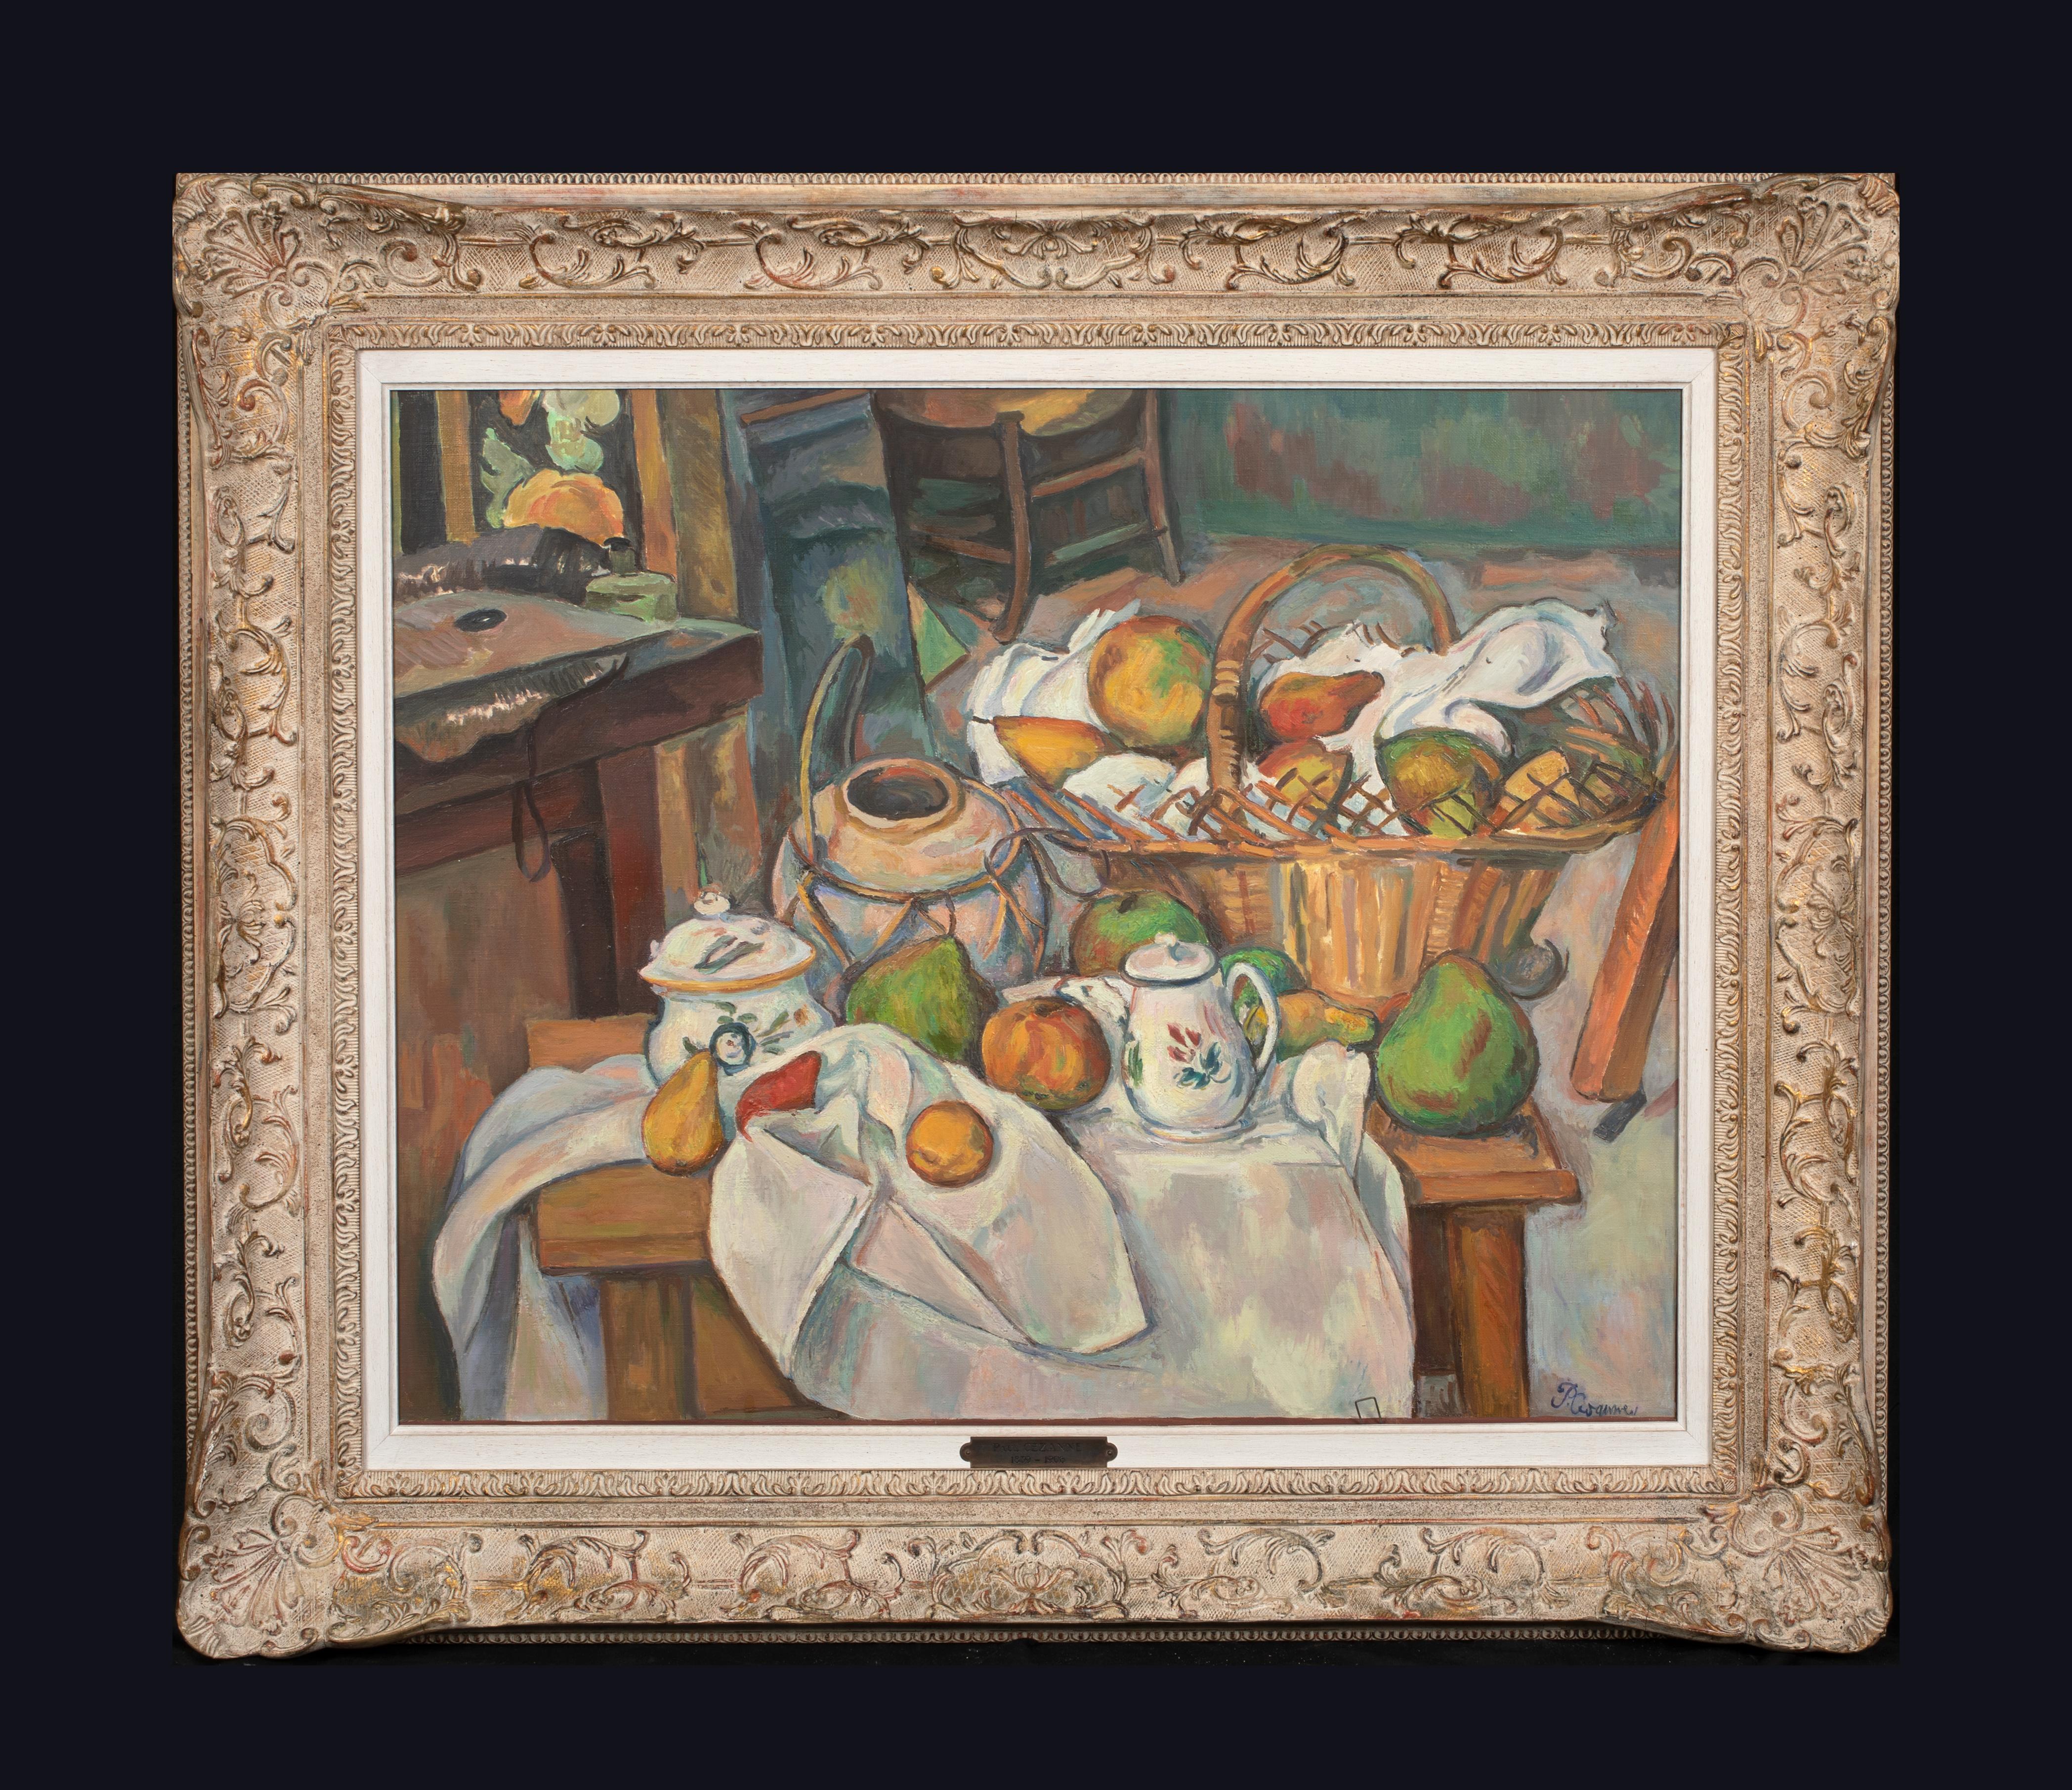  La Table Toile De 1888 - Painting by Paul Cézanne